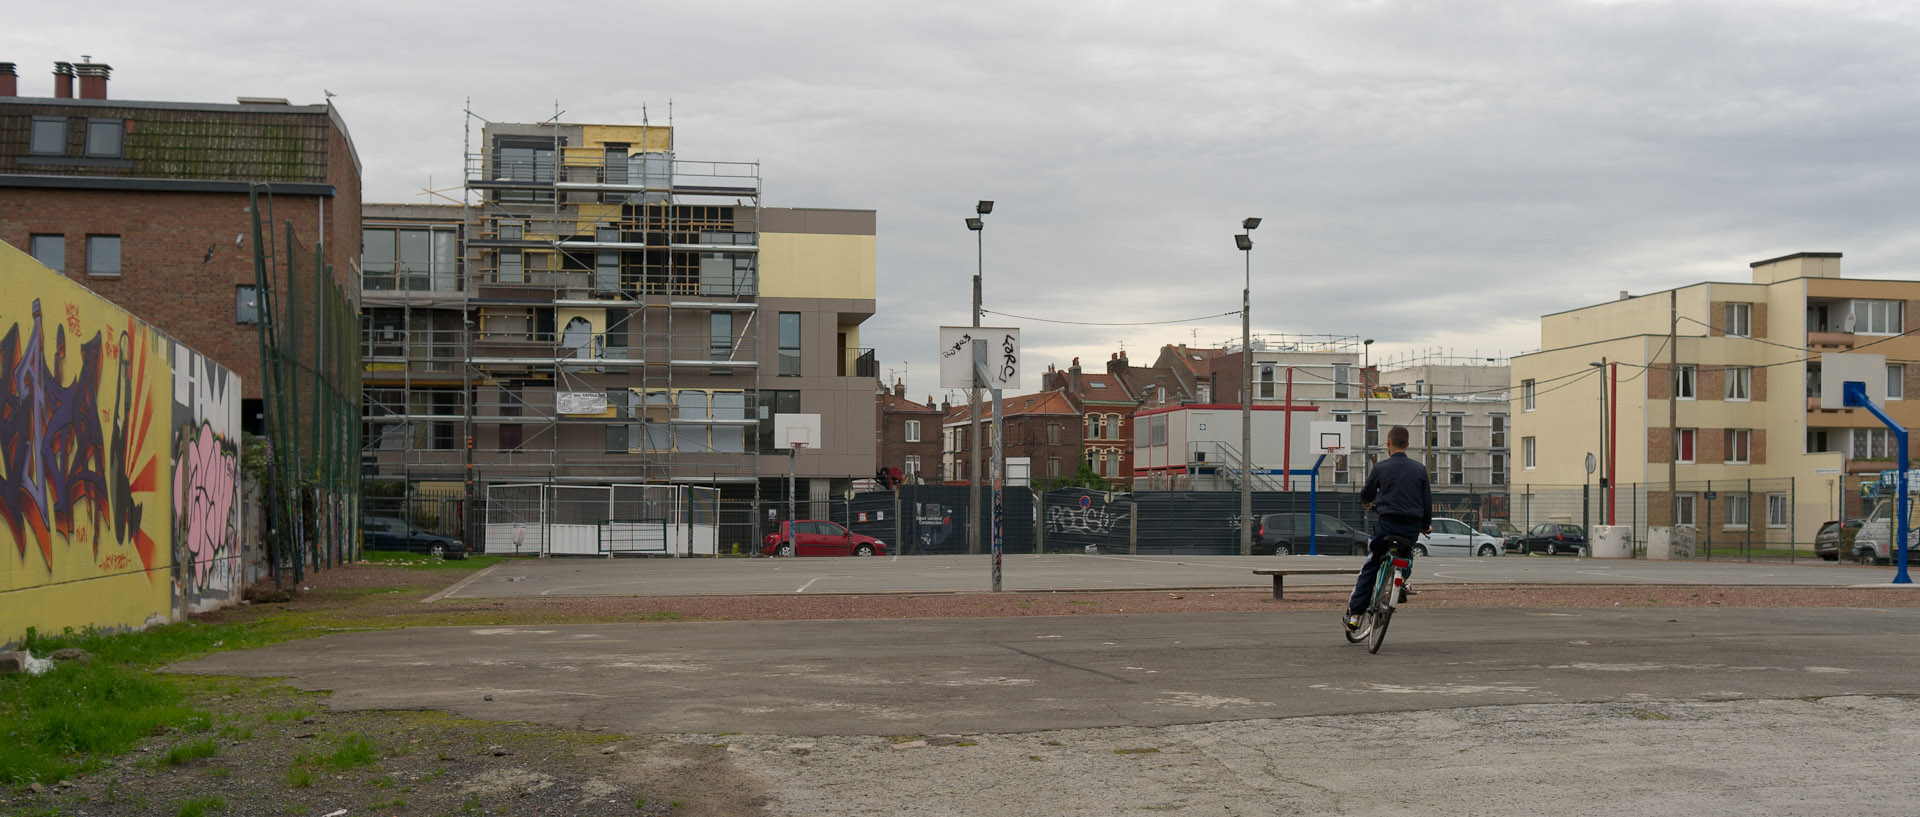 Terrain de sport, rue d'Austerlitz, à Wazemmes, Lille.